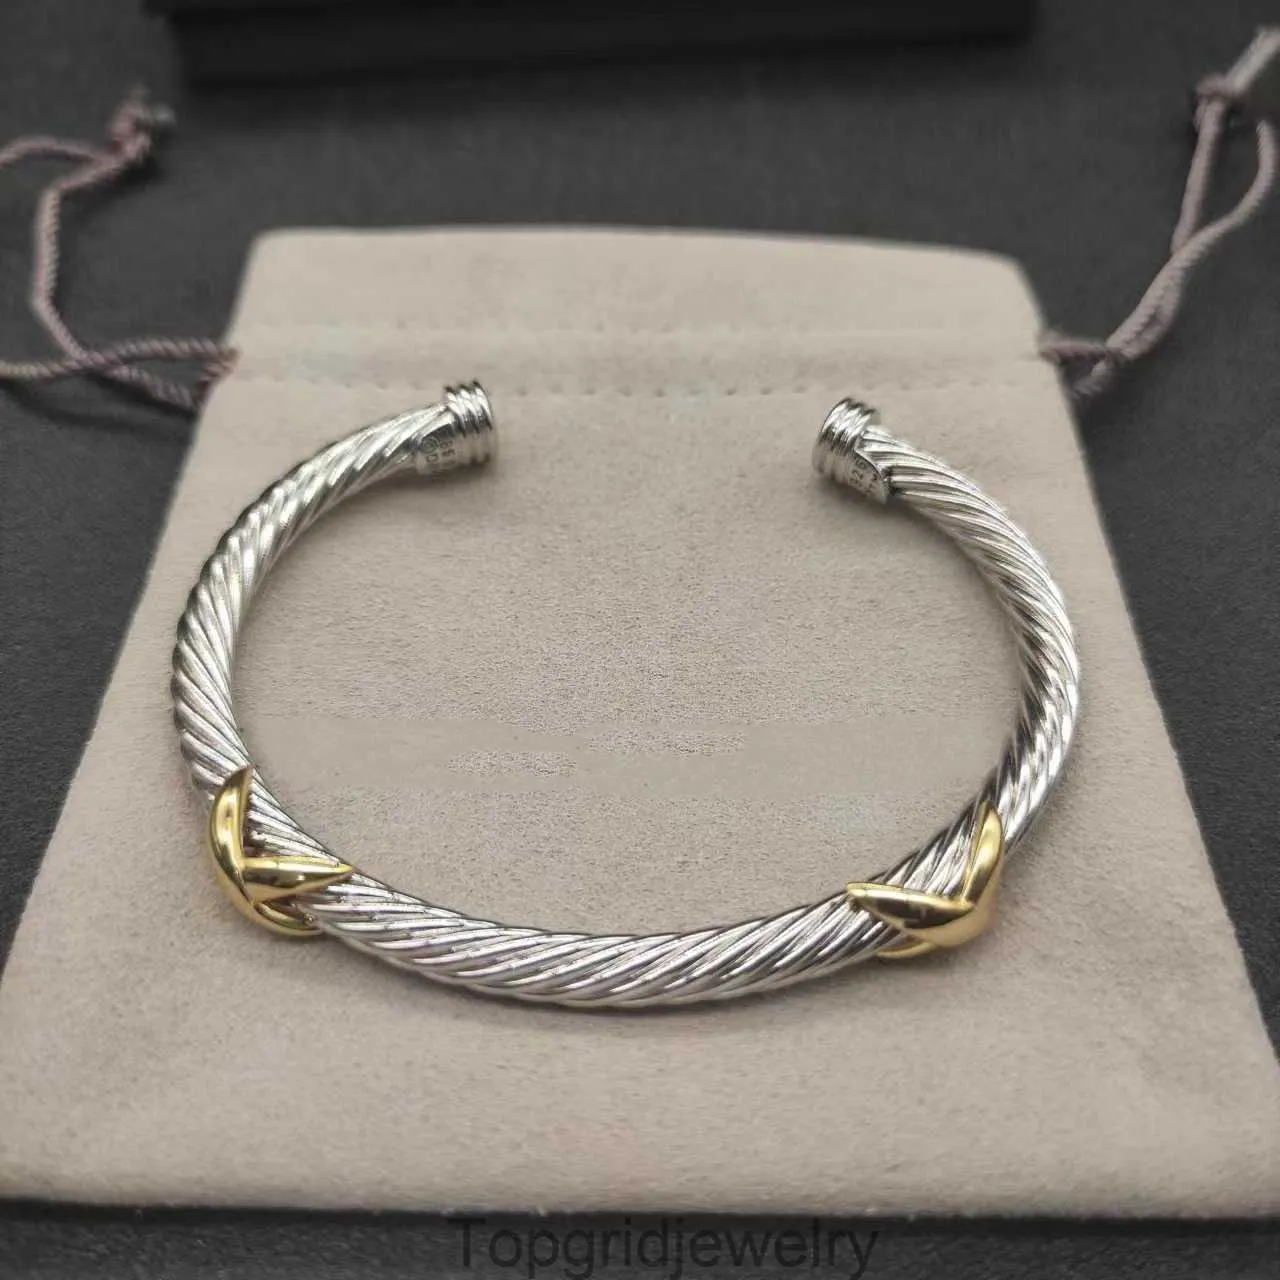 David Yurma Bracelet DY Bracelet Designer Cable Bracelet Fashion Jewelry for Women Men Gold Silver Pearl Head Cross Bangle Bracelet Dy Jewelry 591